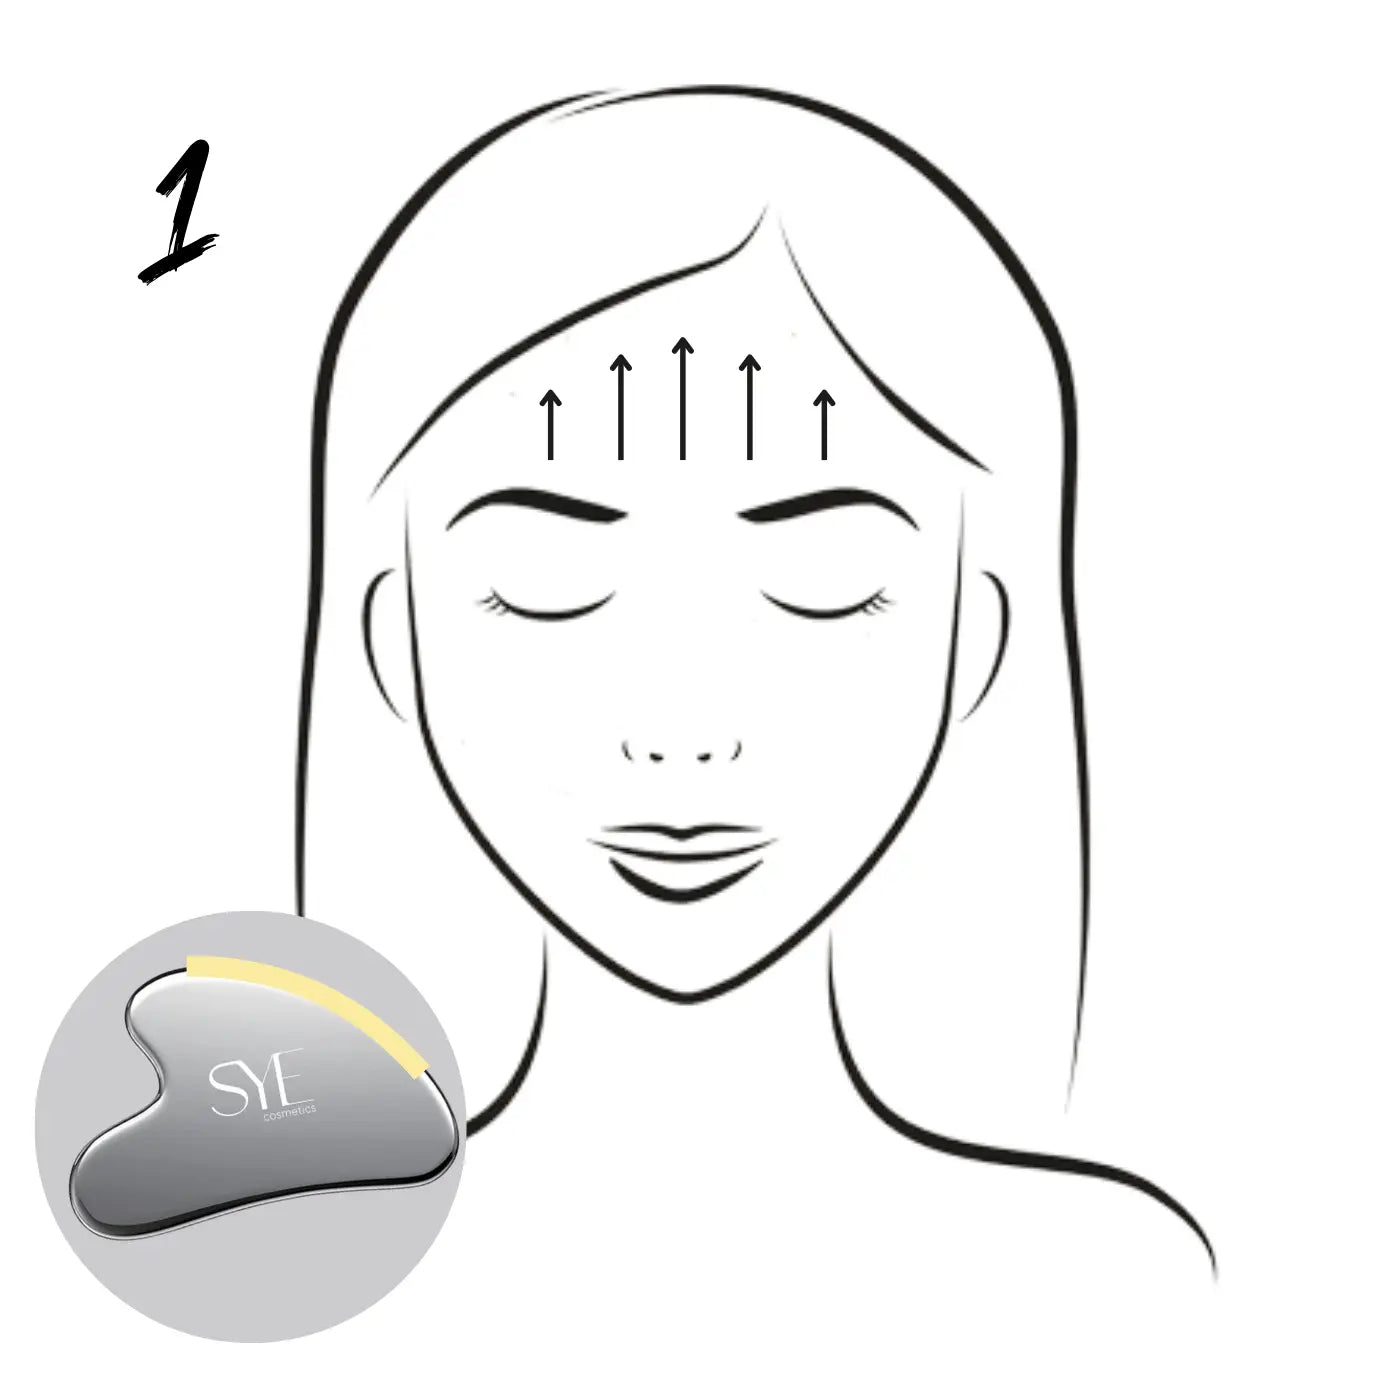 Anwendung des Gua Sha Steins aus Edelstahl auf der Stirn zur Förderung der Durchblutung und Entspannung von Stirnfalten